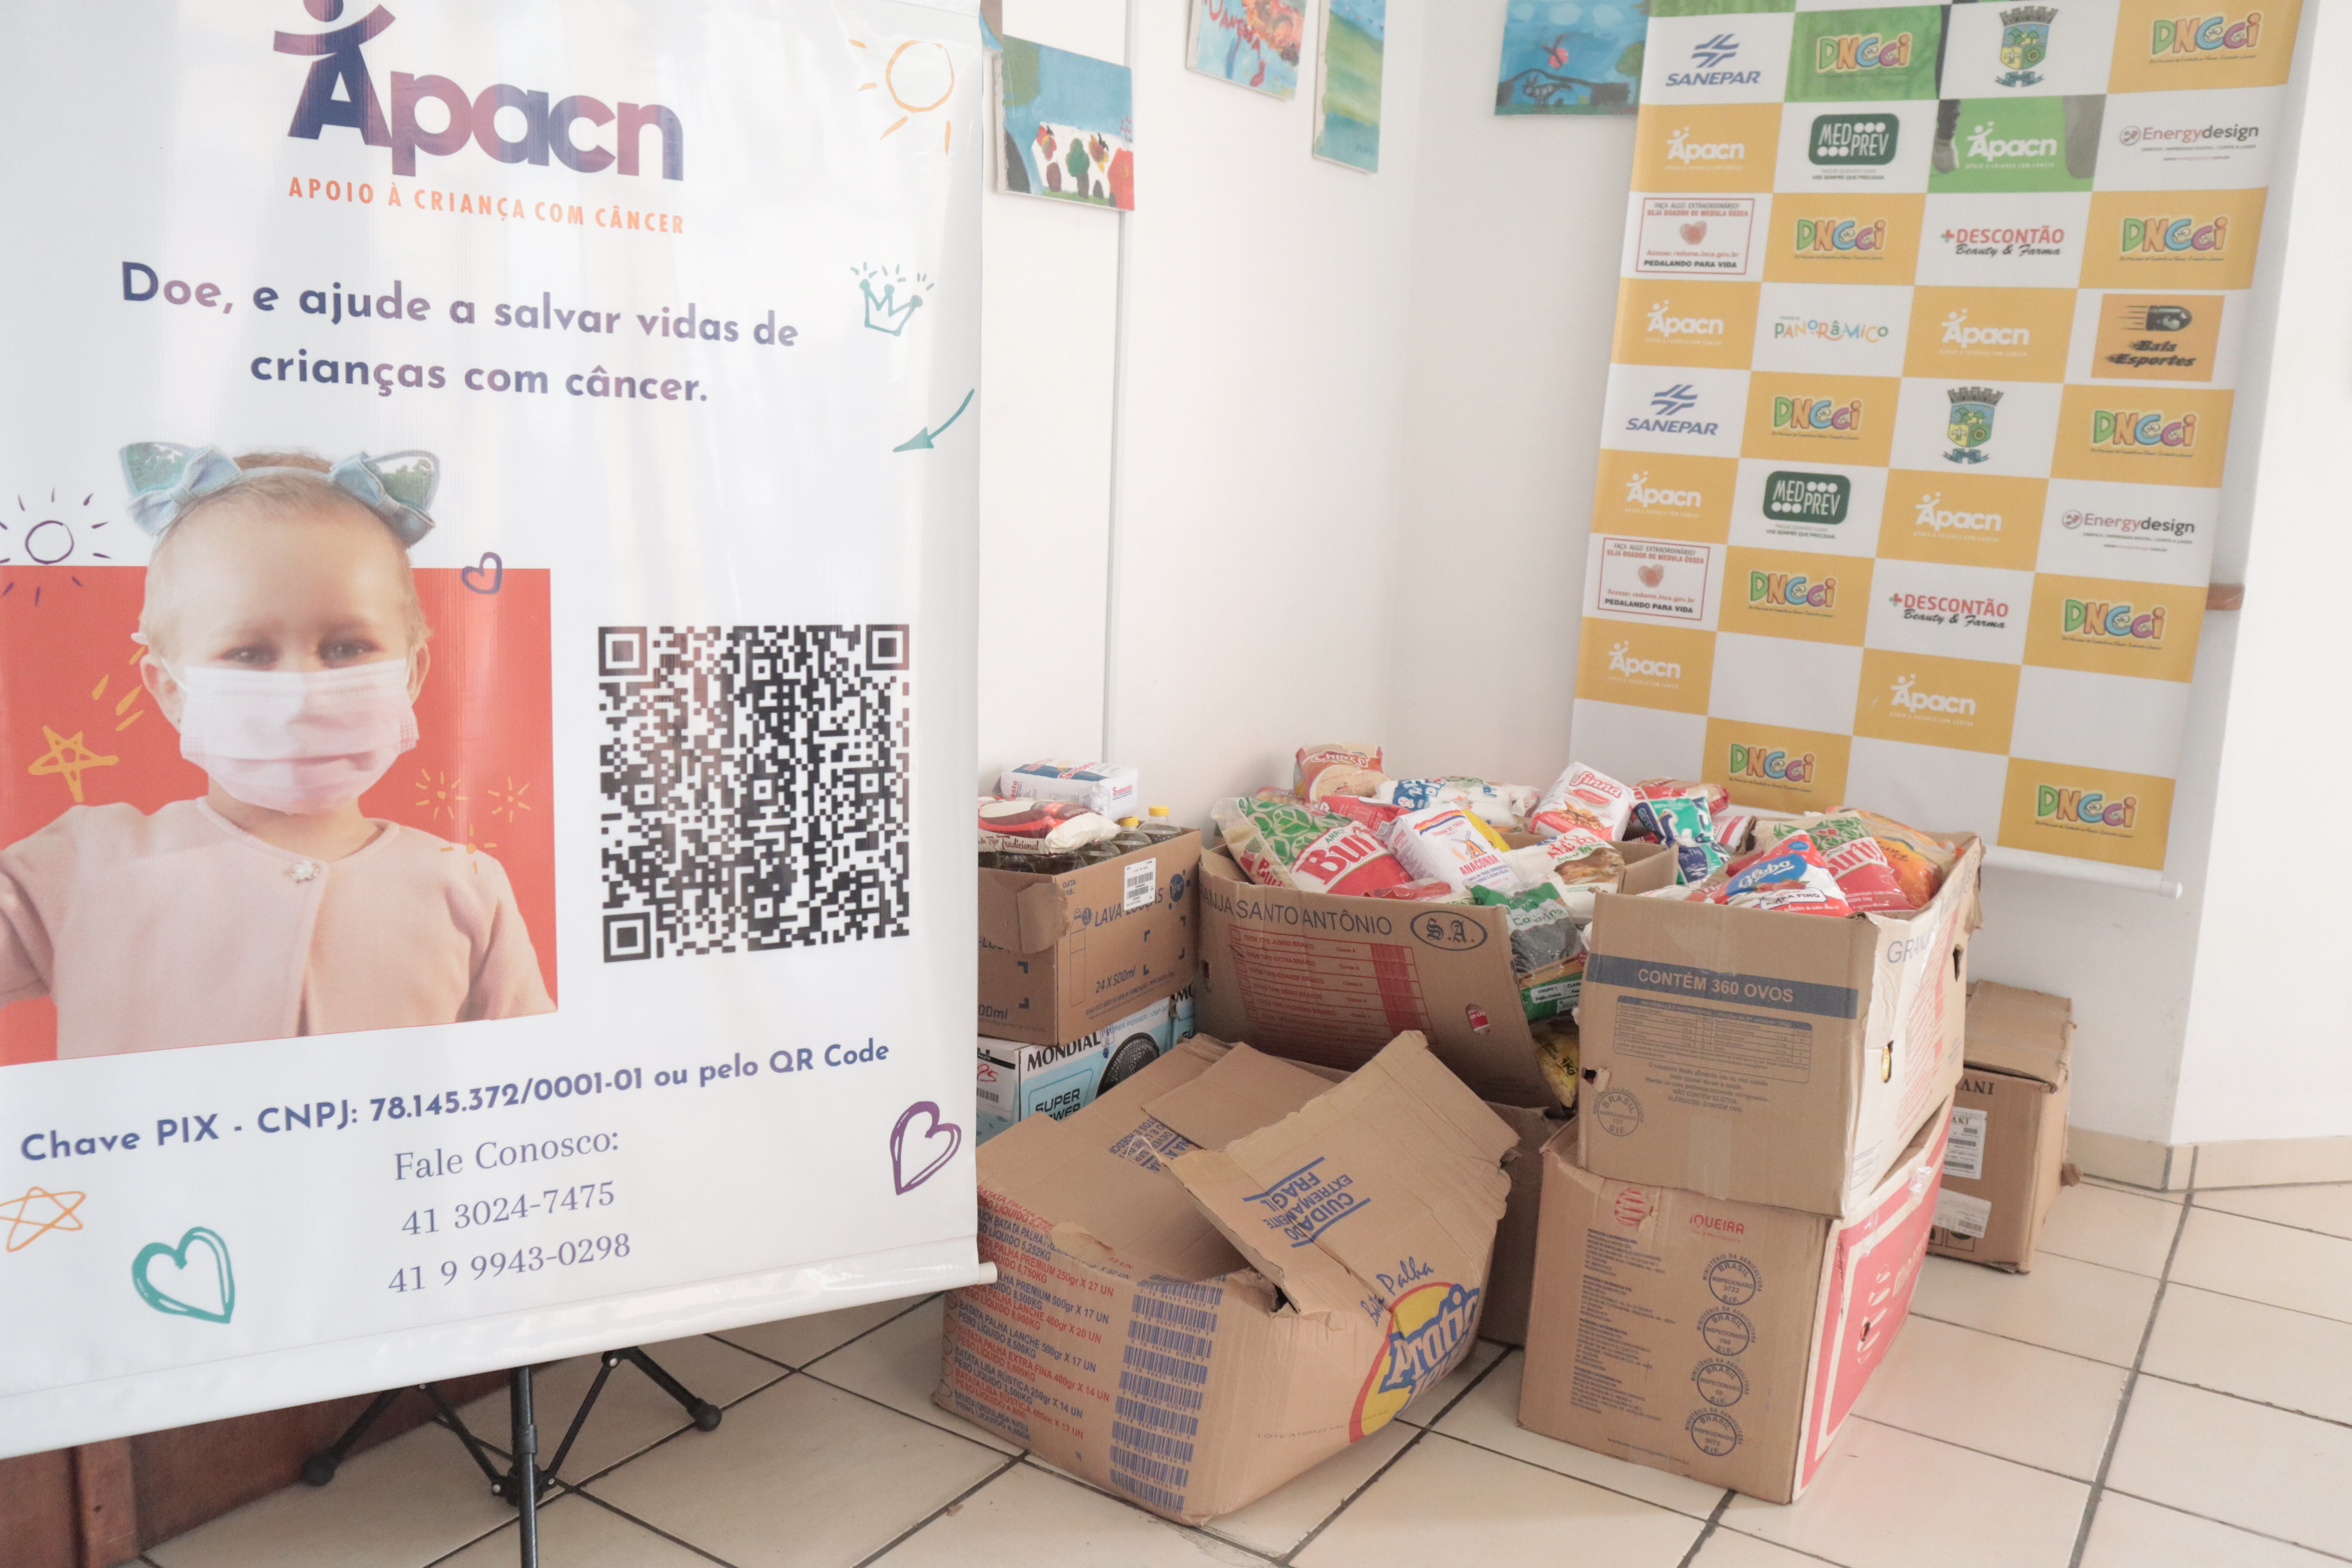 Evento filantrópico arrecada e entrega doações de alimentos à APACN